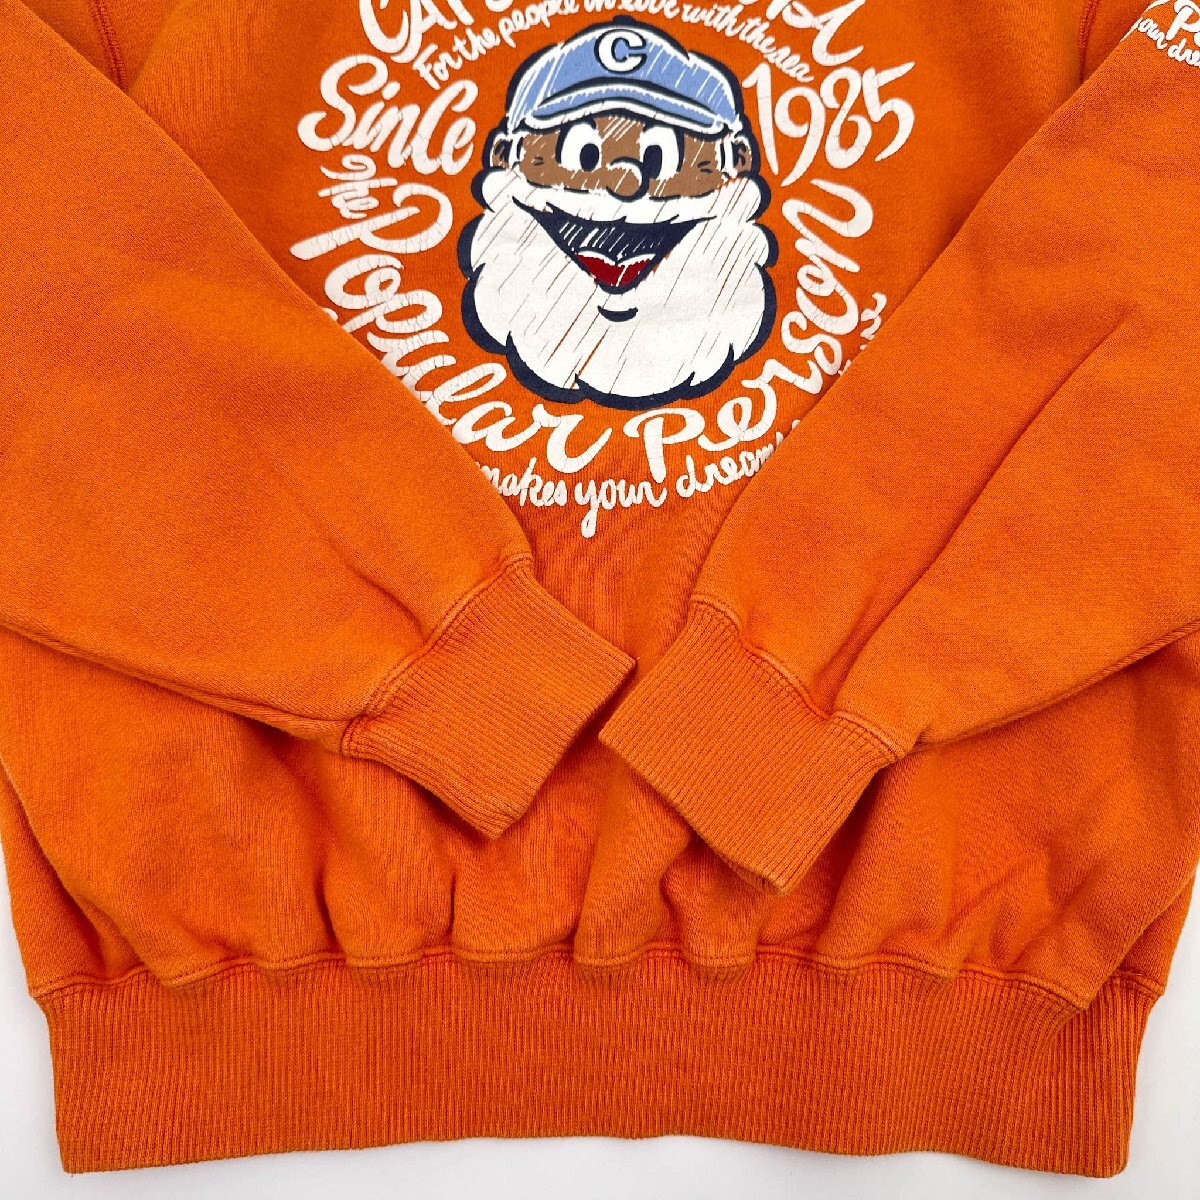 BIG print!!*CAPTAIN SANTA Captain Santa print long sleeve sweat sweatshirt shirt S/ orange series / men's JMD made in Japan 